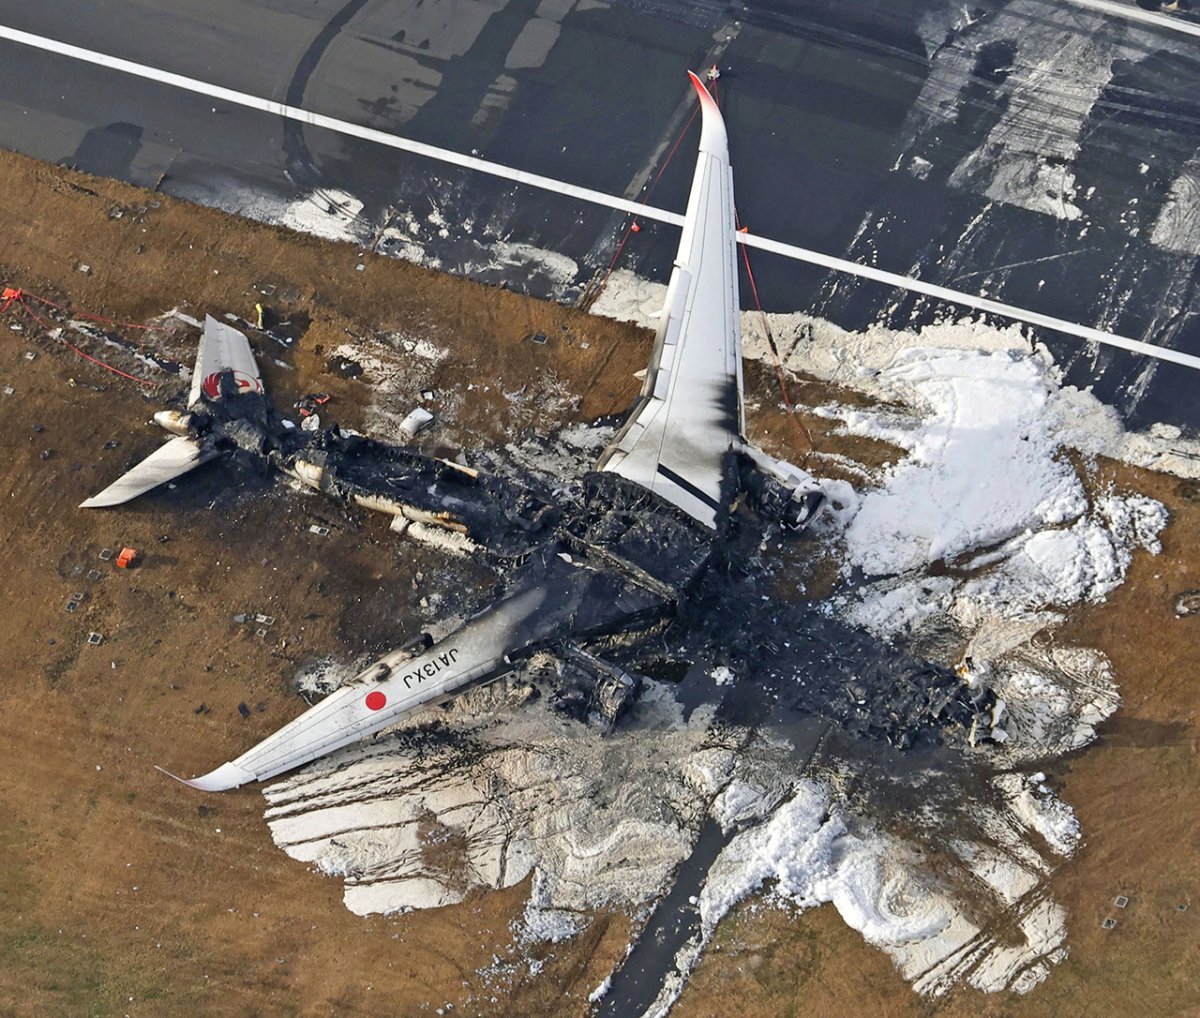 착륙 도중 다른 항공기와 충돌하면서 불이 붙어 전소된 일본항공 516편(JA13XJ) A350 항공기. 형체가 남지 않을 정도로 동체가 타버렸지만 모든 탑승객은 무사히 탈출했습니다. 도쿄=AP 뉴시스